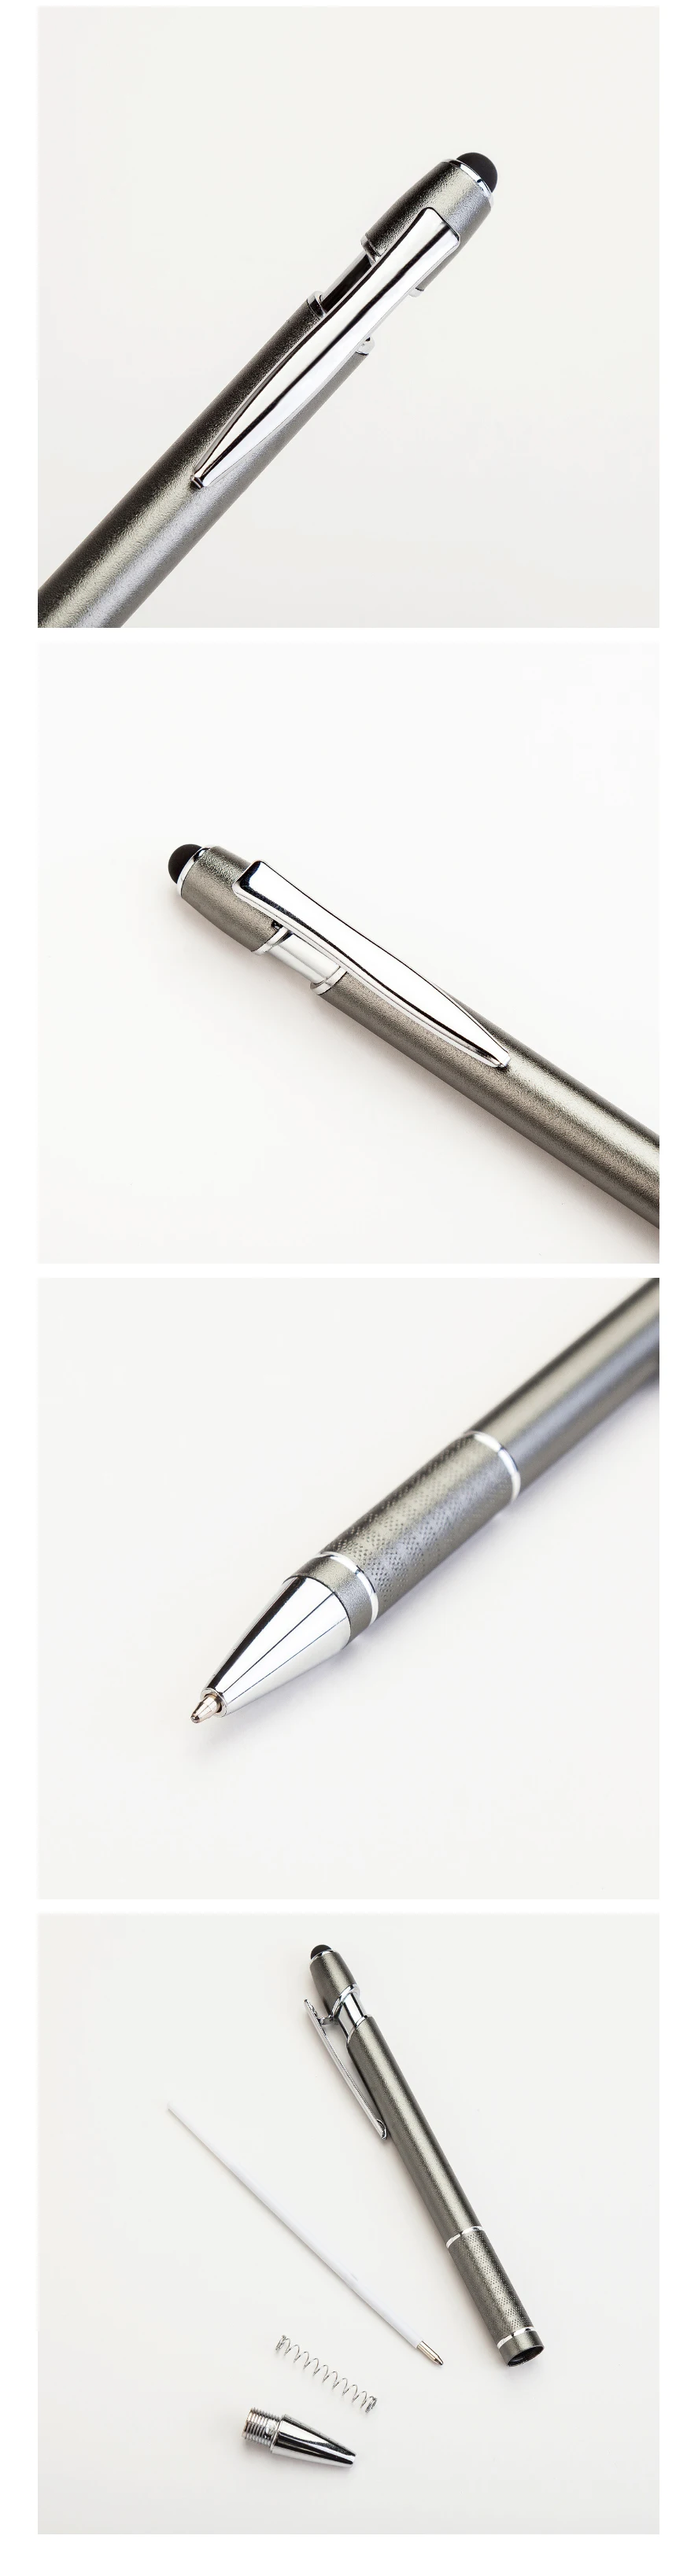 1 шт., металлические многофункциональные пресс-шариковые ручки, алюминиевая подарочная ручка, емкостная ручка для рукописного ввода с сенсорным экраном, Пользовательский логотип с ручкой в коробке